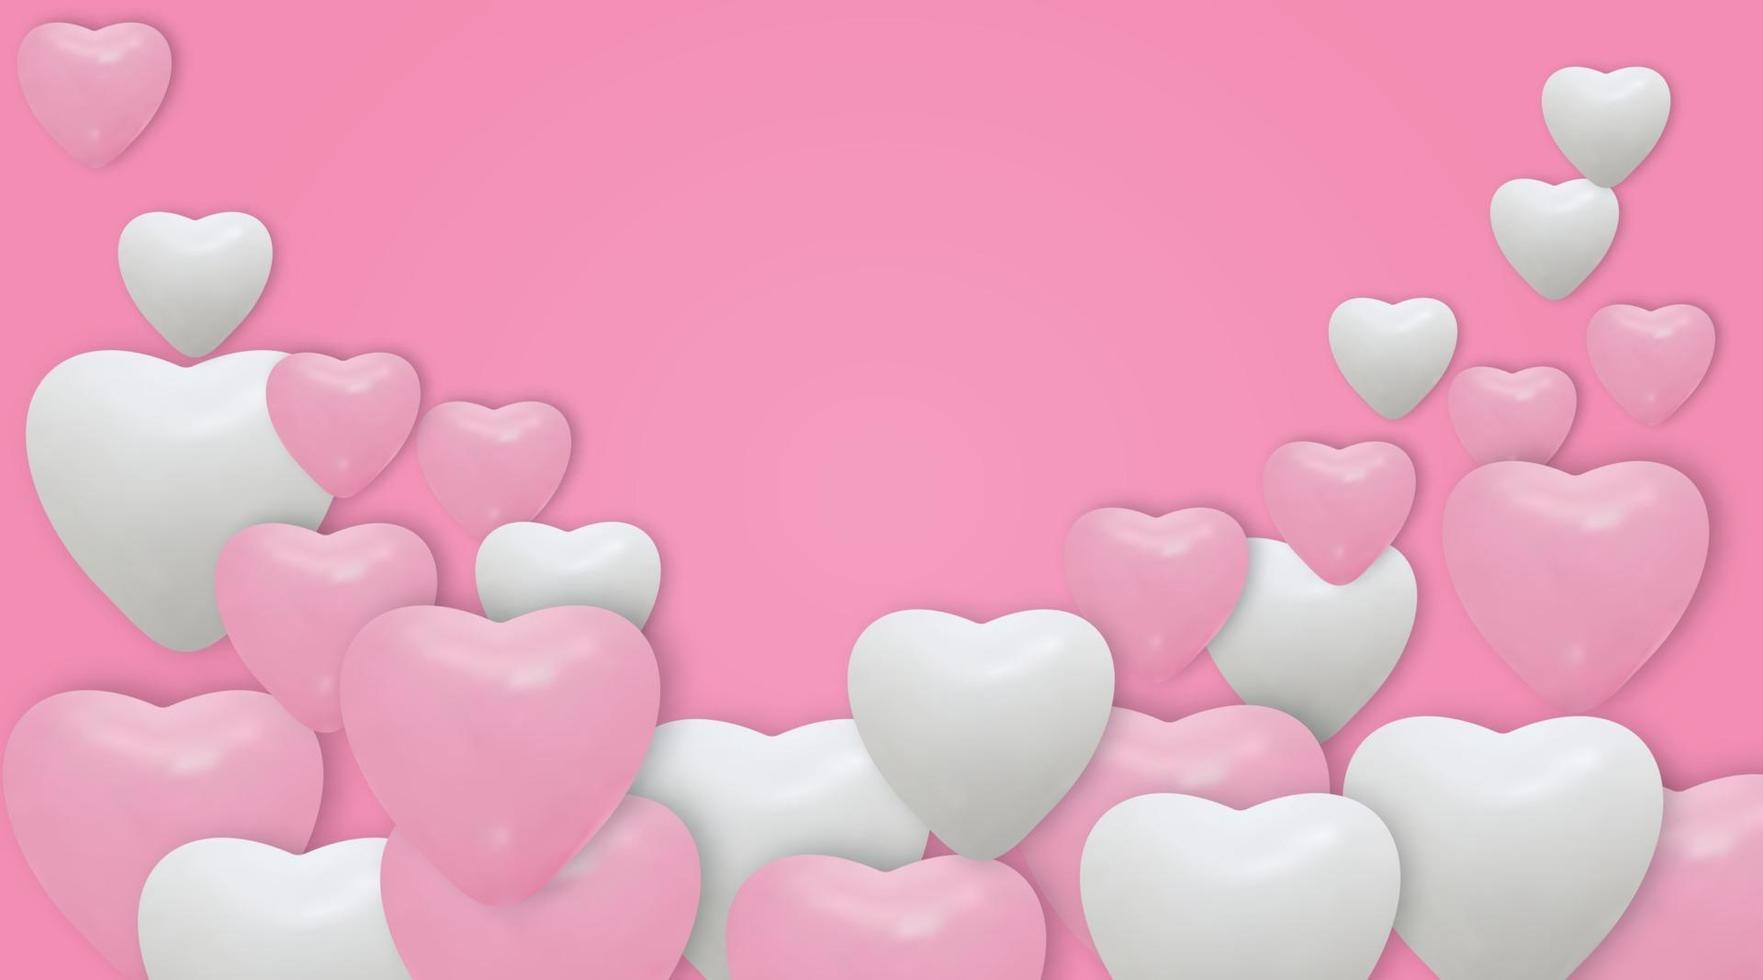 ballons coeur blanc et rose sur fond rose. ballons réalistes et place pour le texte. illustration vectorielle vecteur